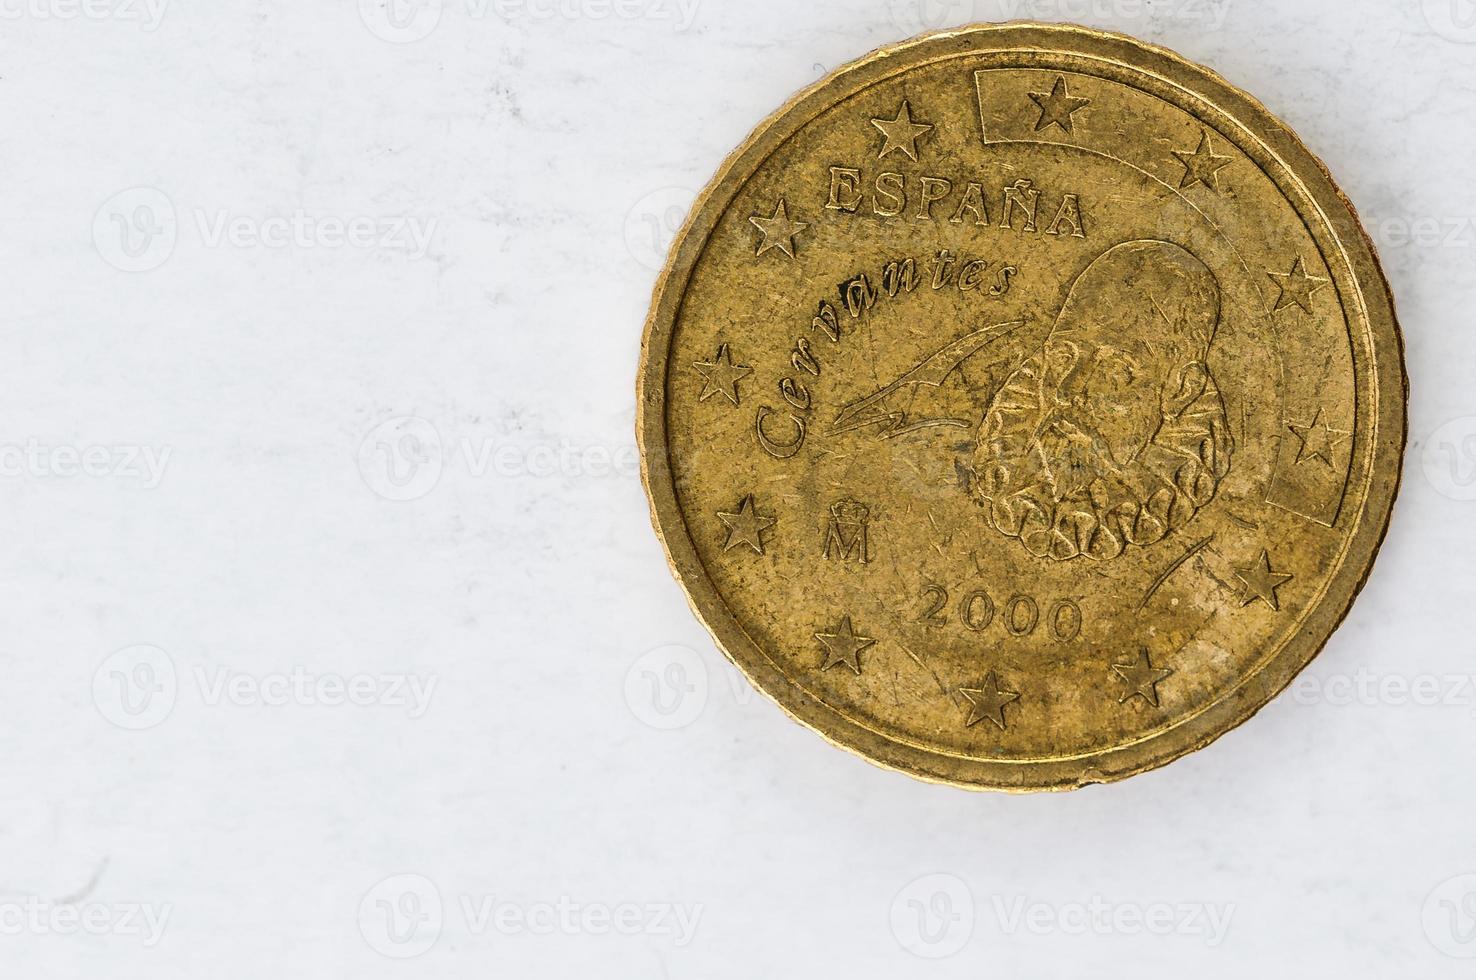 Moeda de 50 cêntimos de euro com parte traseira de espania cervantes foto